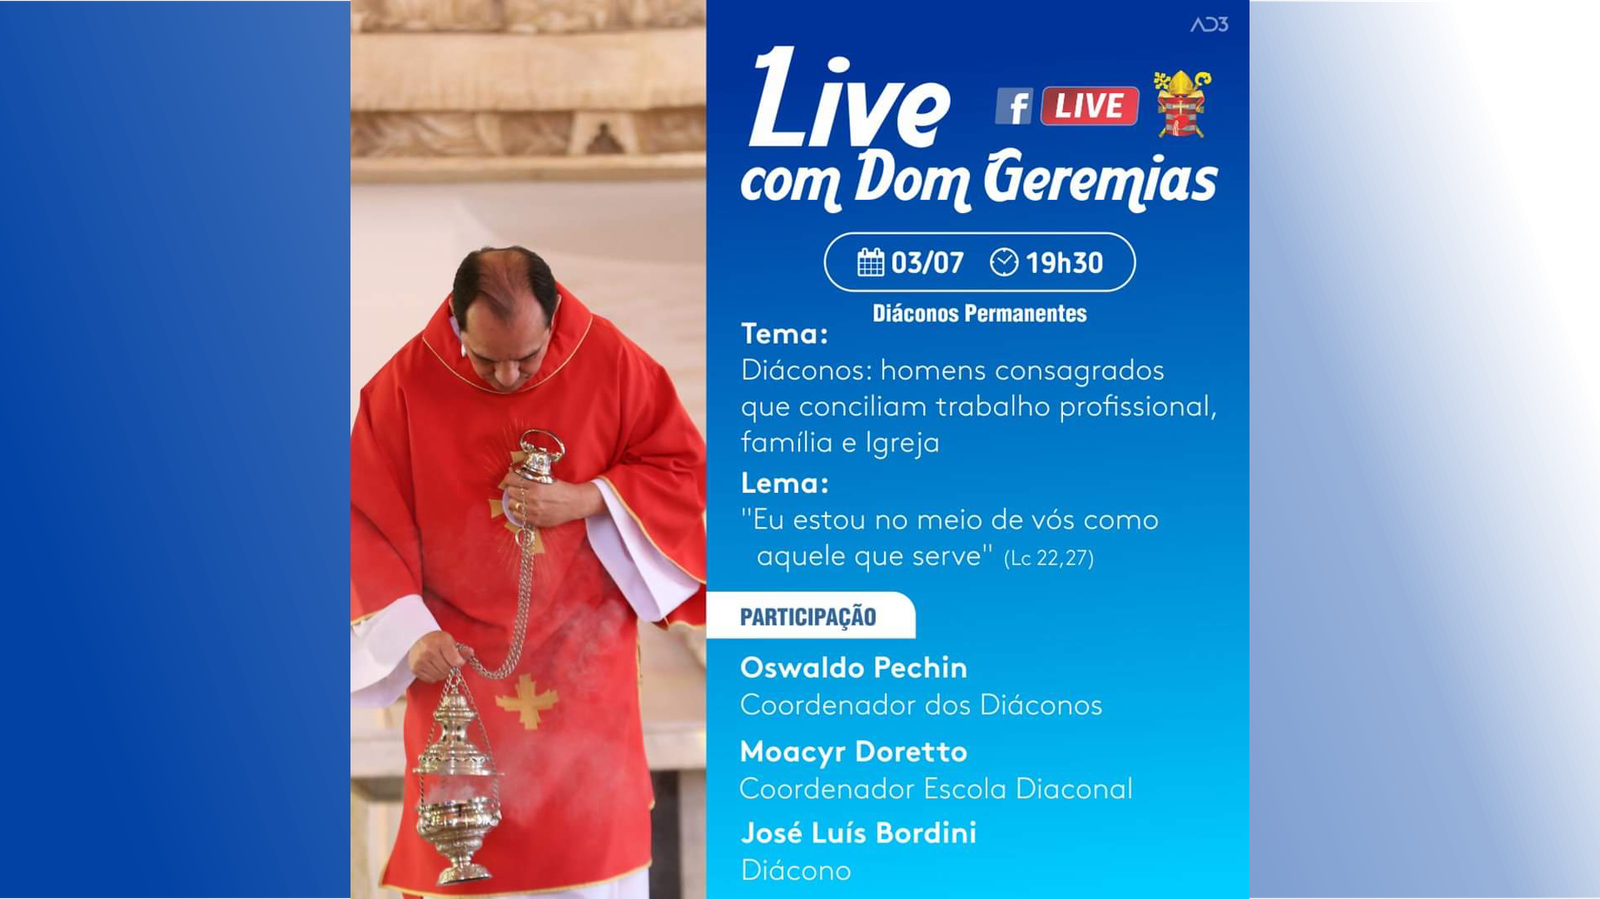 Live com Dom Geremias e os Diáconos Permanentes